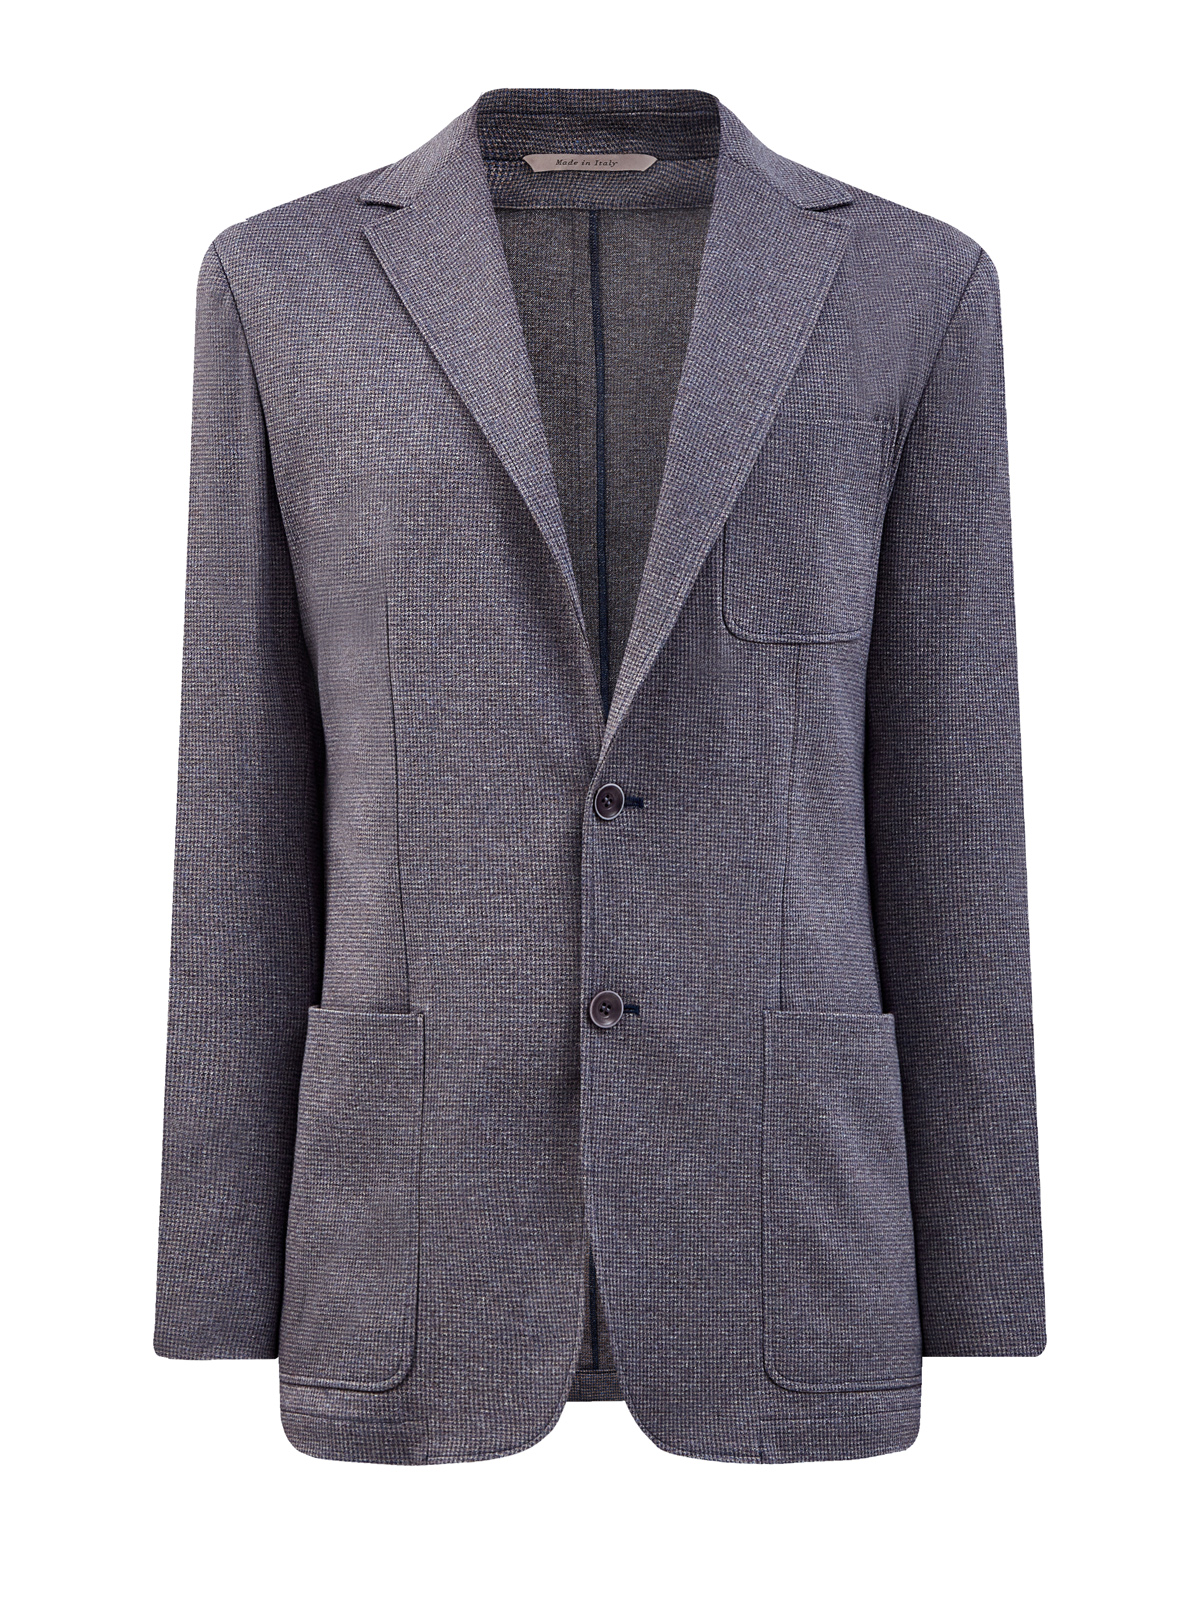 Шерстяной пиджак ручной работы с накладными карманами CANALI, цвет серый, размер 48;50;52;54;56;58